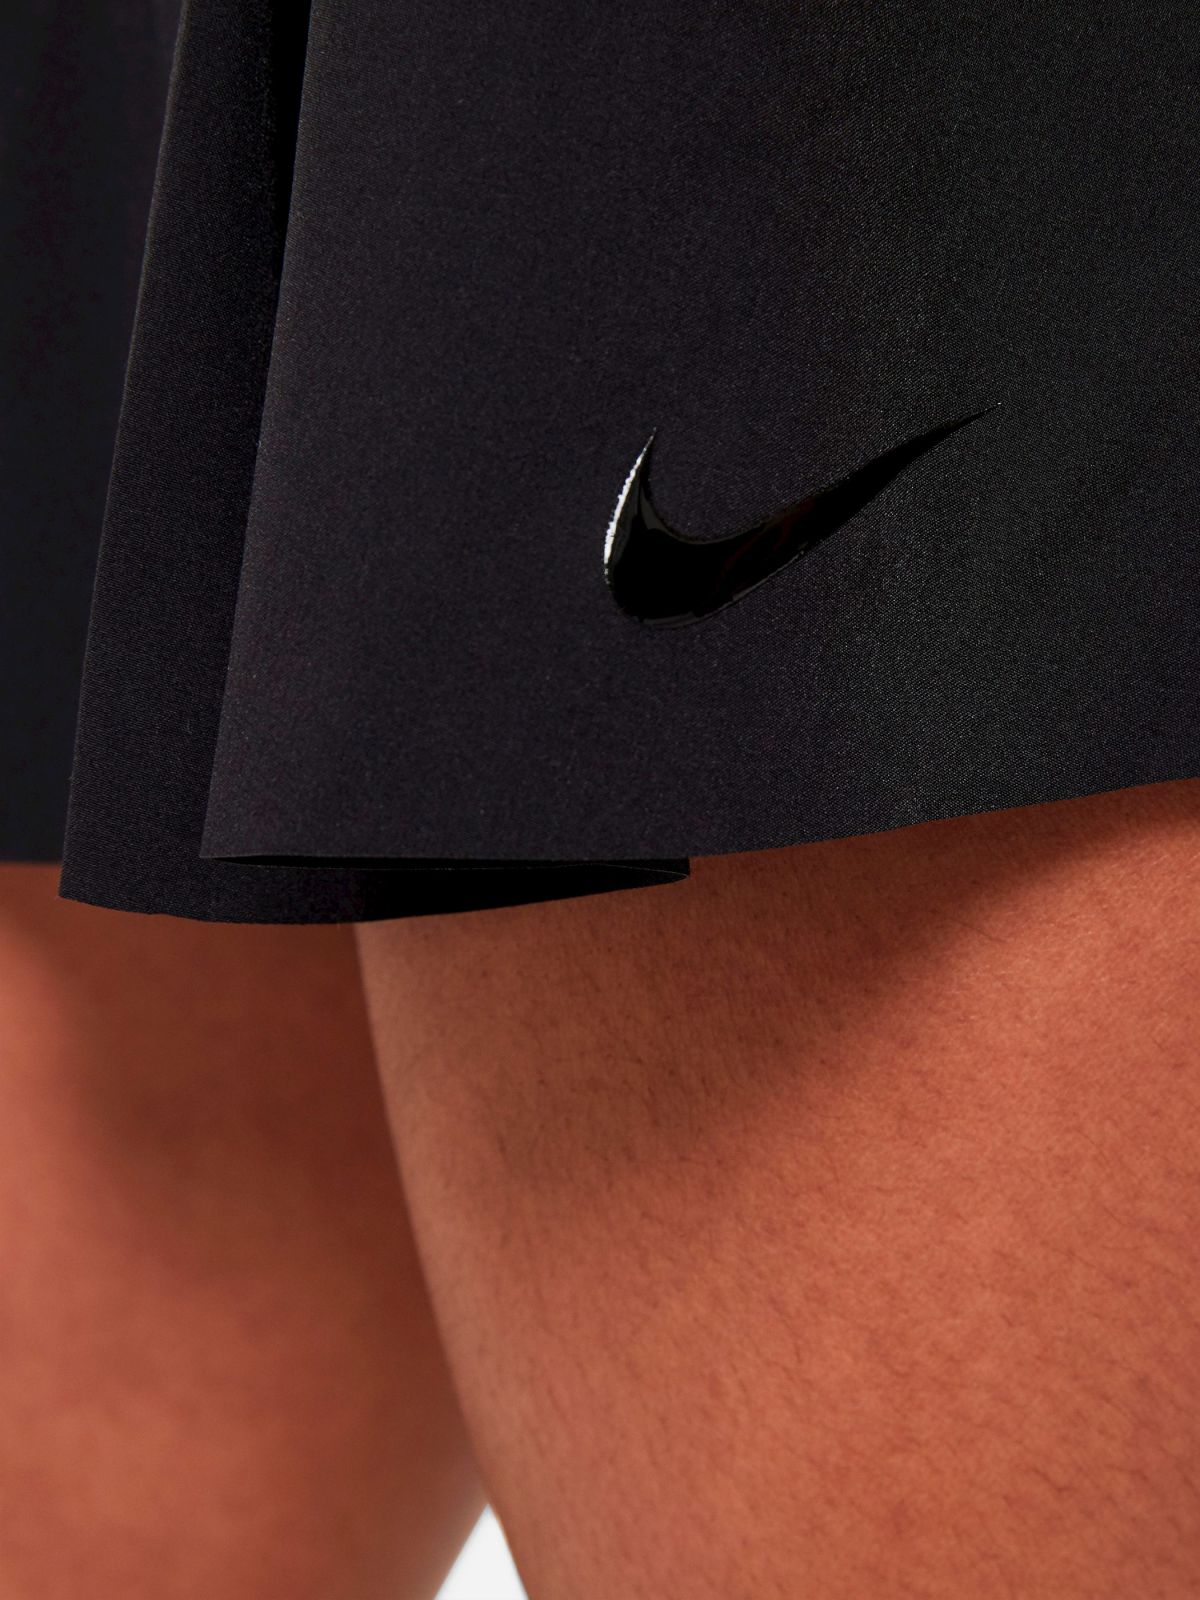  חצאית טניס עם לוגו Nike Club Skirt של NIKE